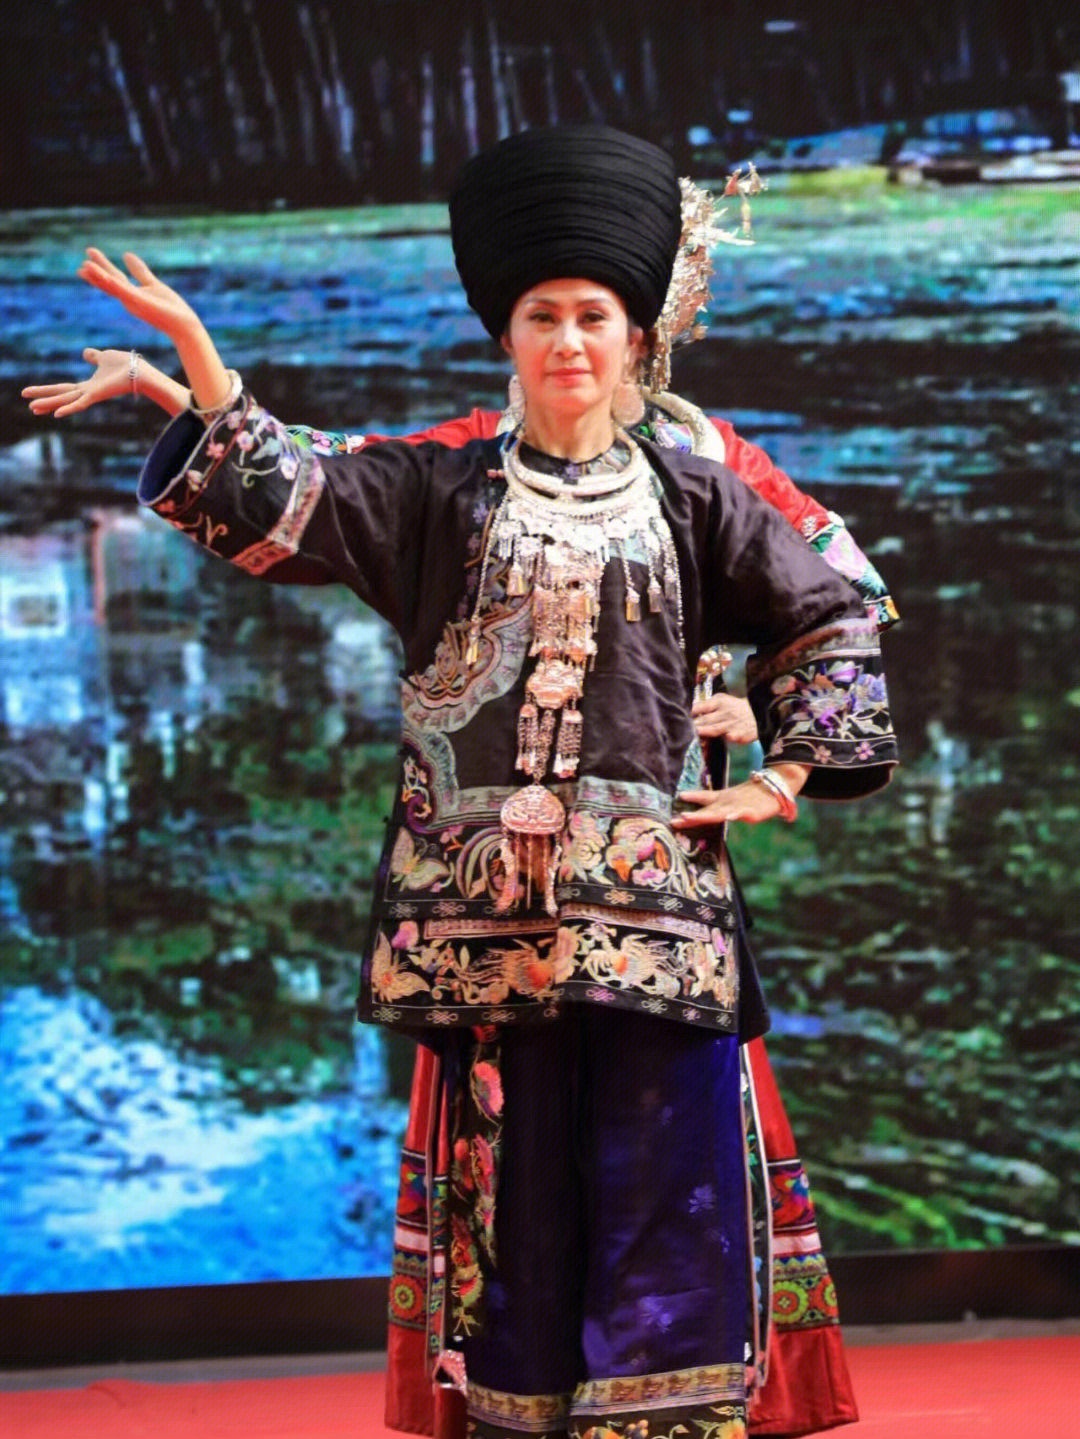 分享一组湘西苗族传统服装照片